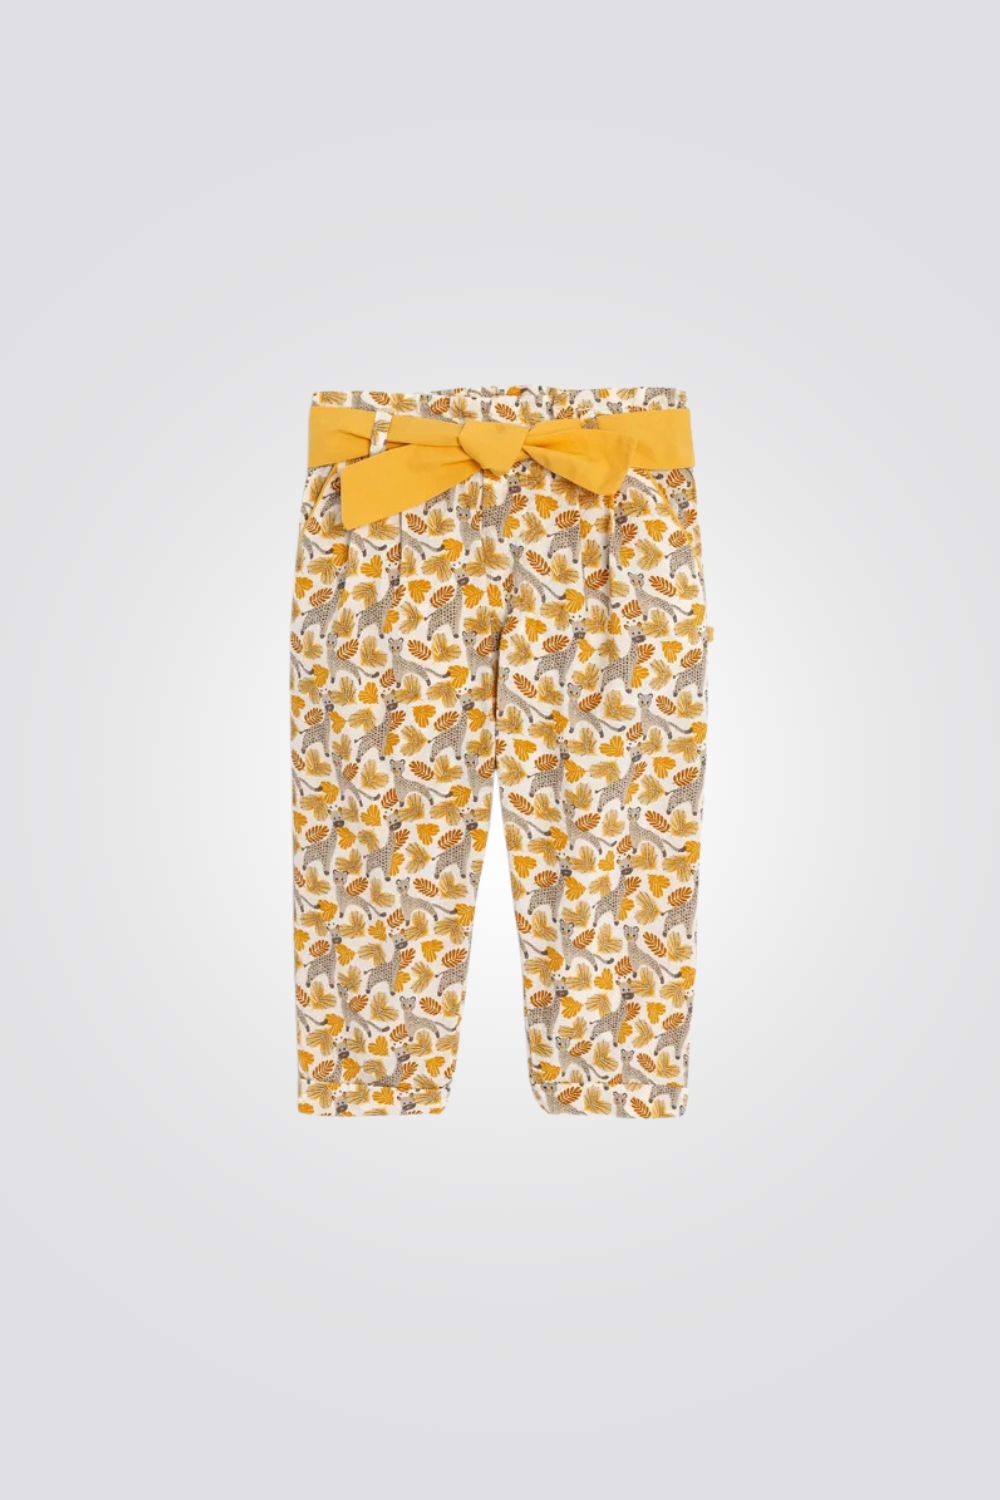 מכנסיים לתינוקות עם הדפס חיות בצבע בז'